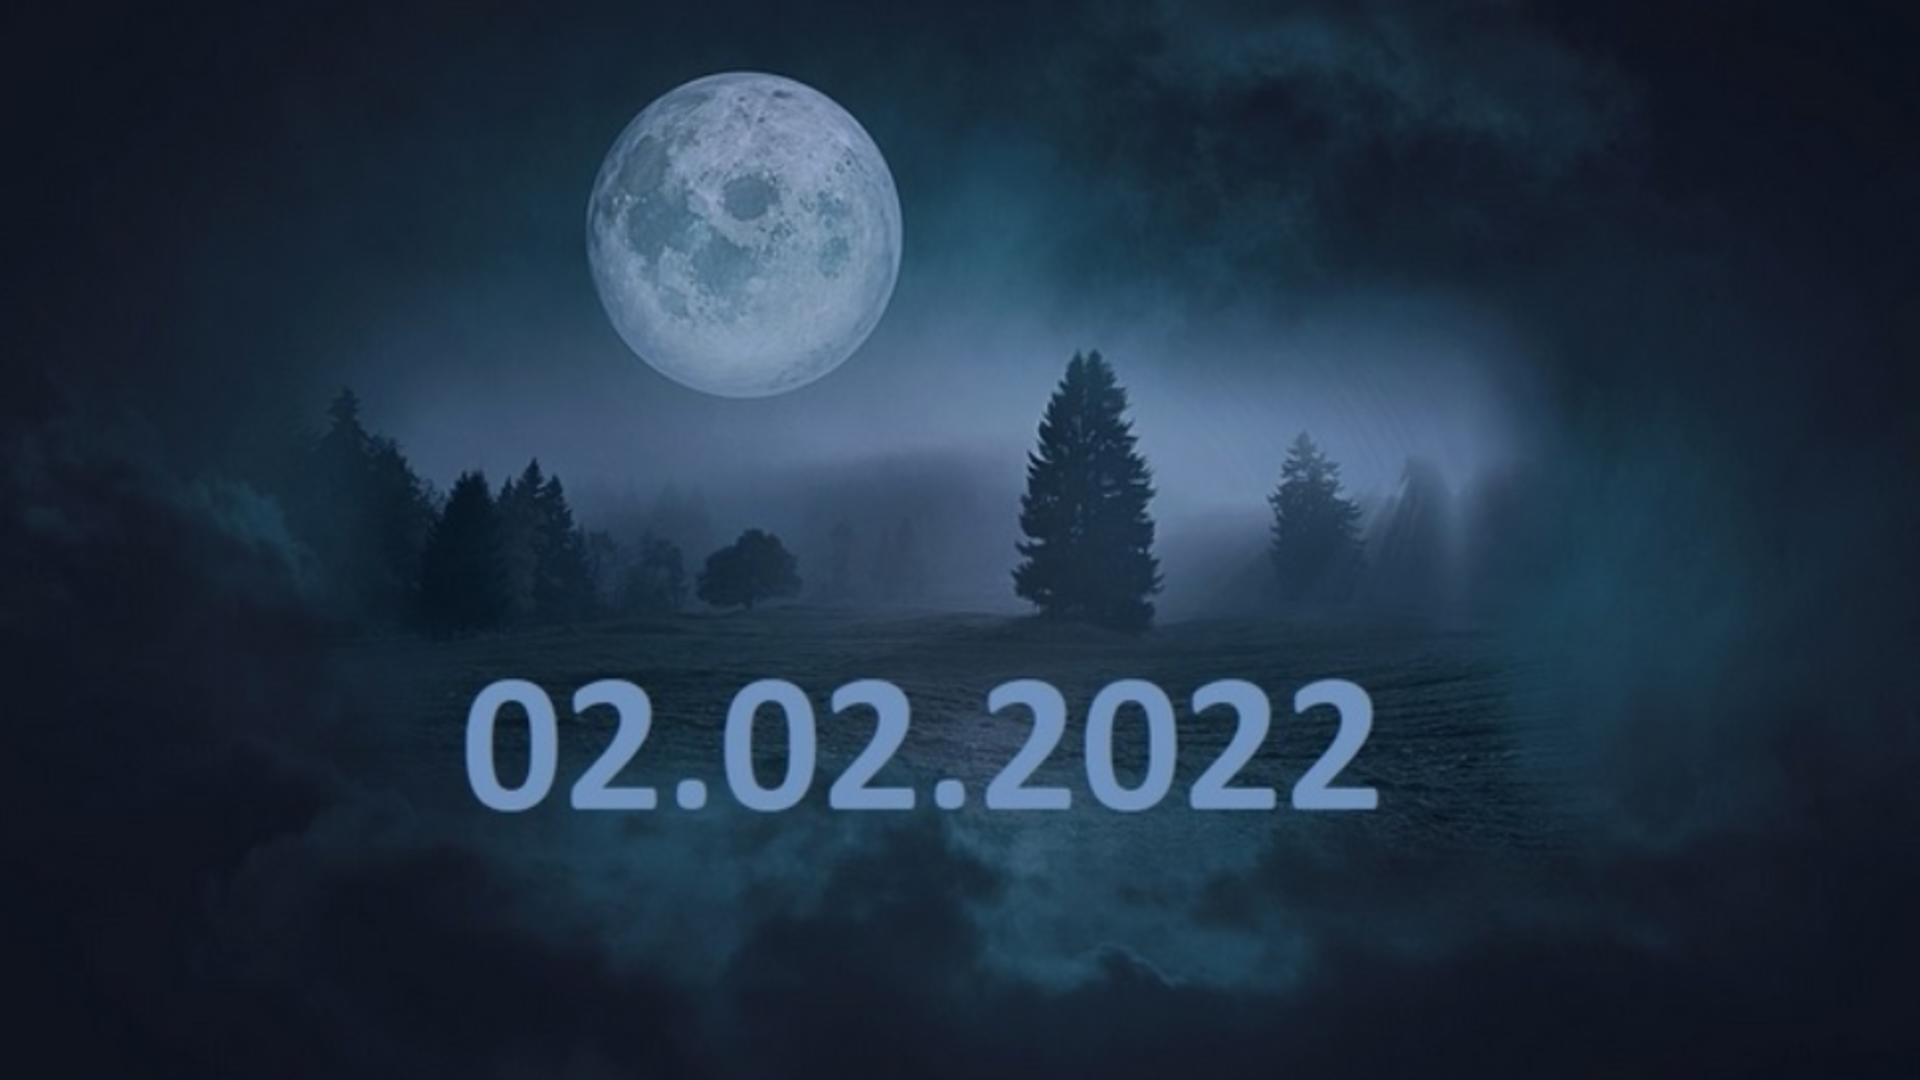 22.02.2022 - Data specială care apare o dată la 180 de ani!